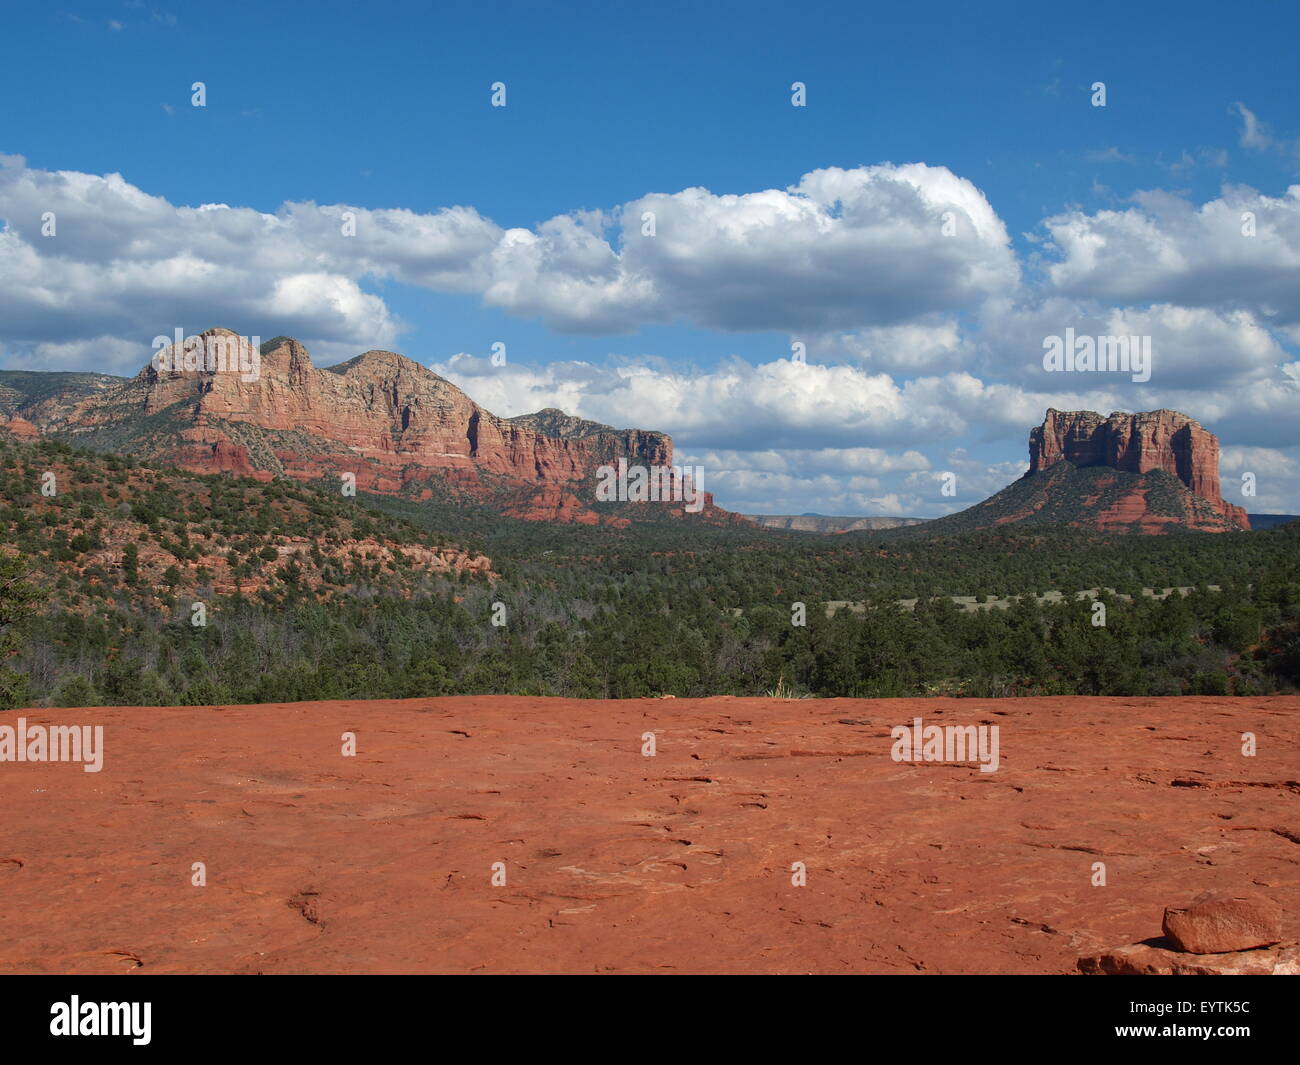 Mountains outside the Sedona, Arizona Stock Photo